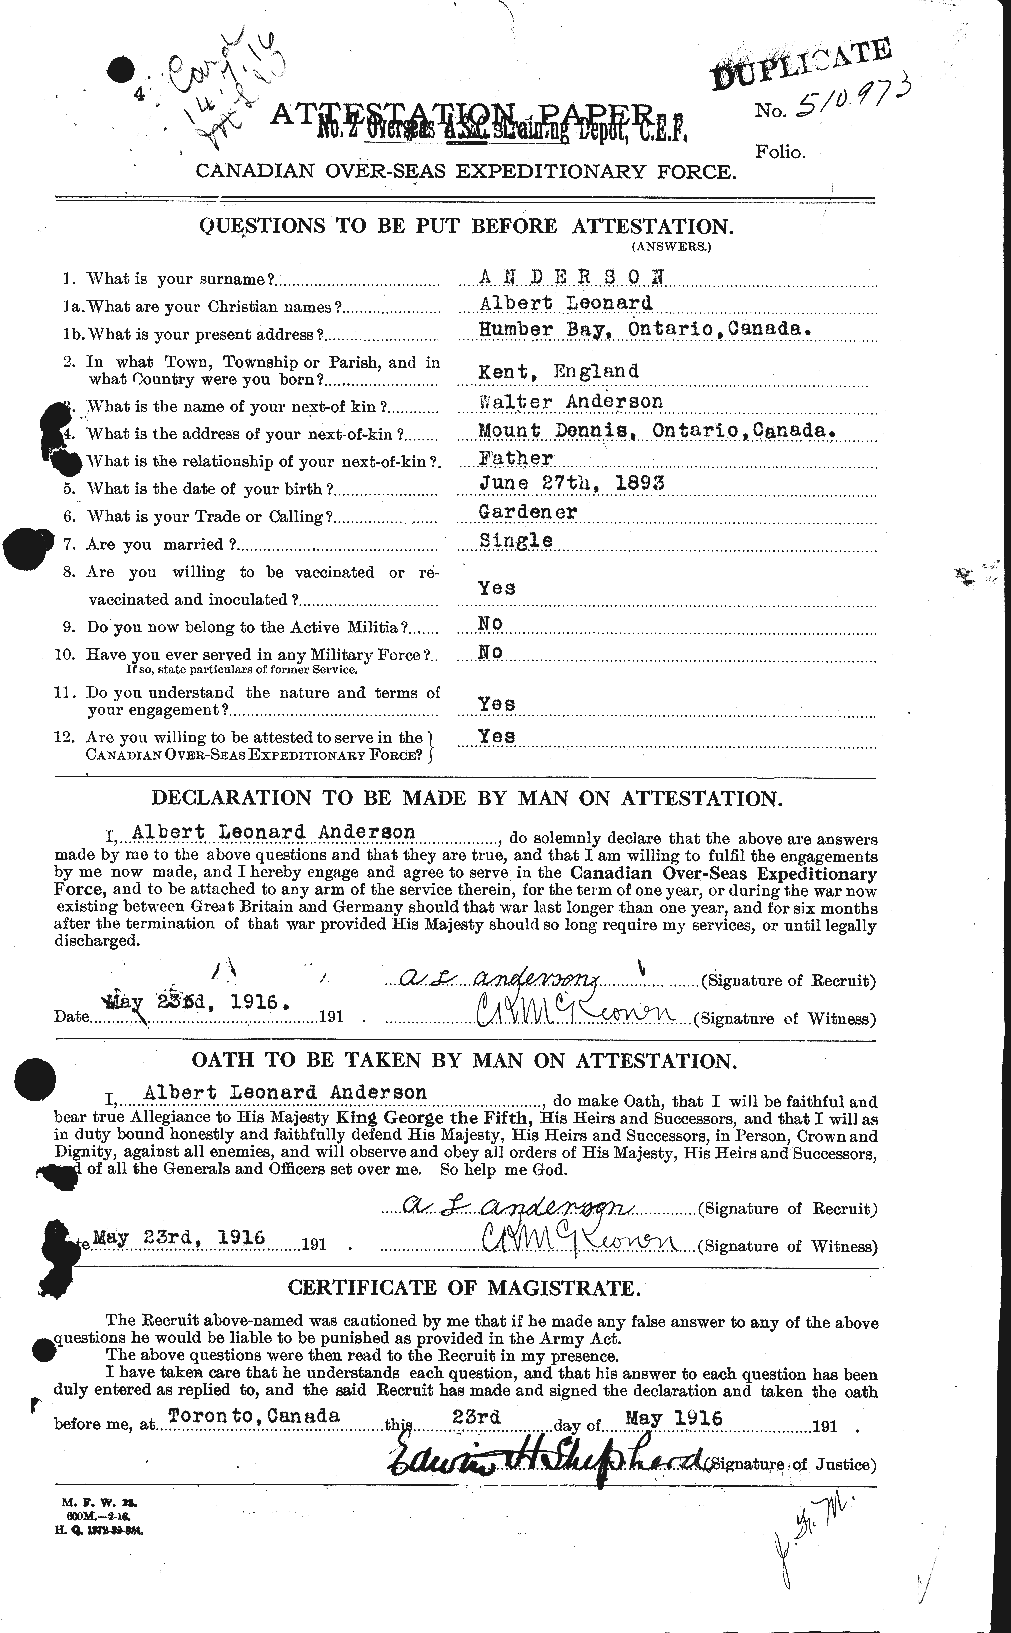 Dossiers du Personnel de la Première Guerre mondiale - CEC 209540a